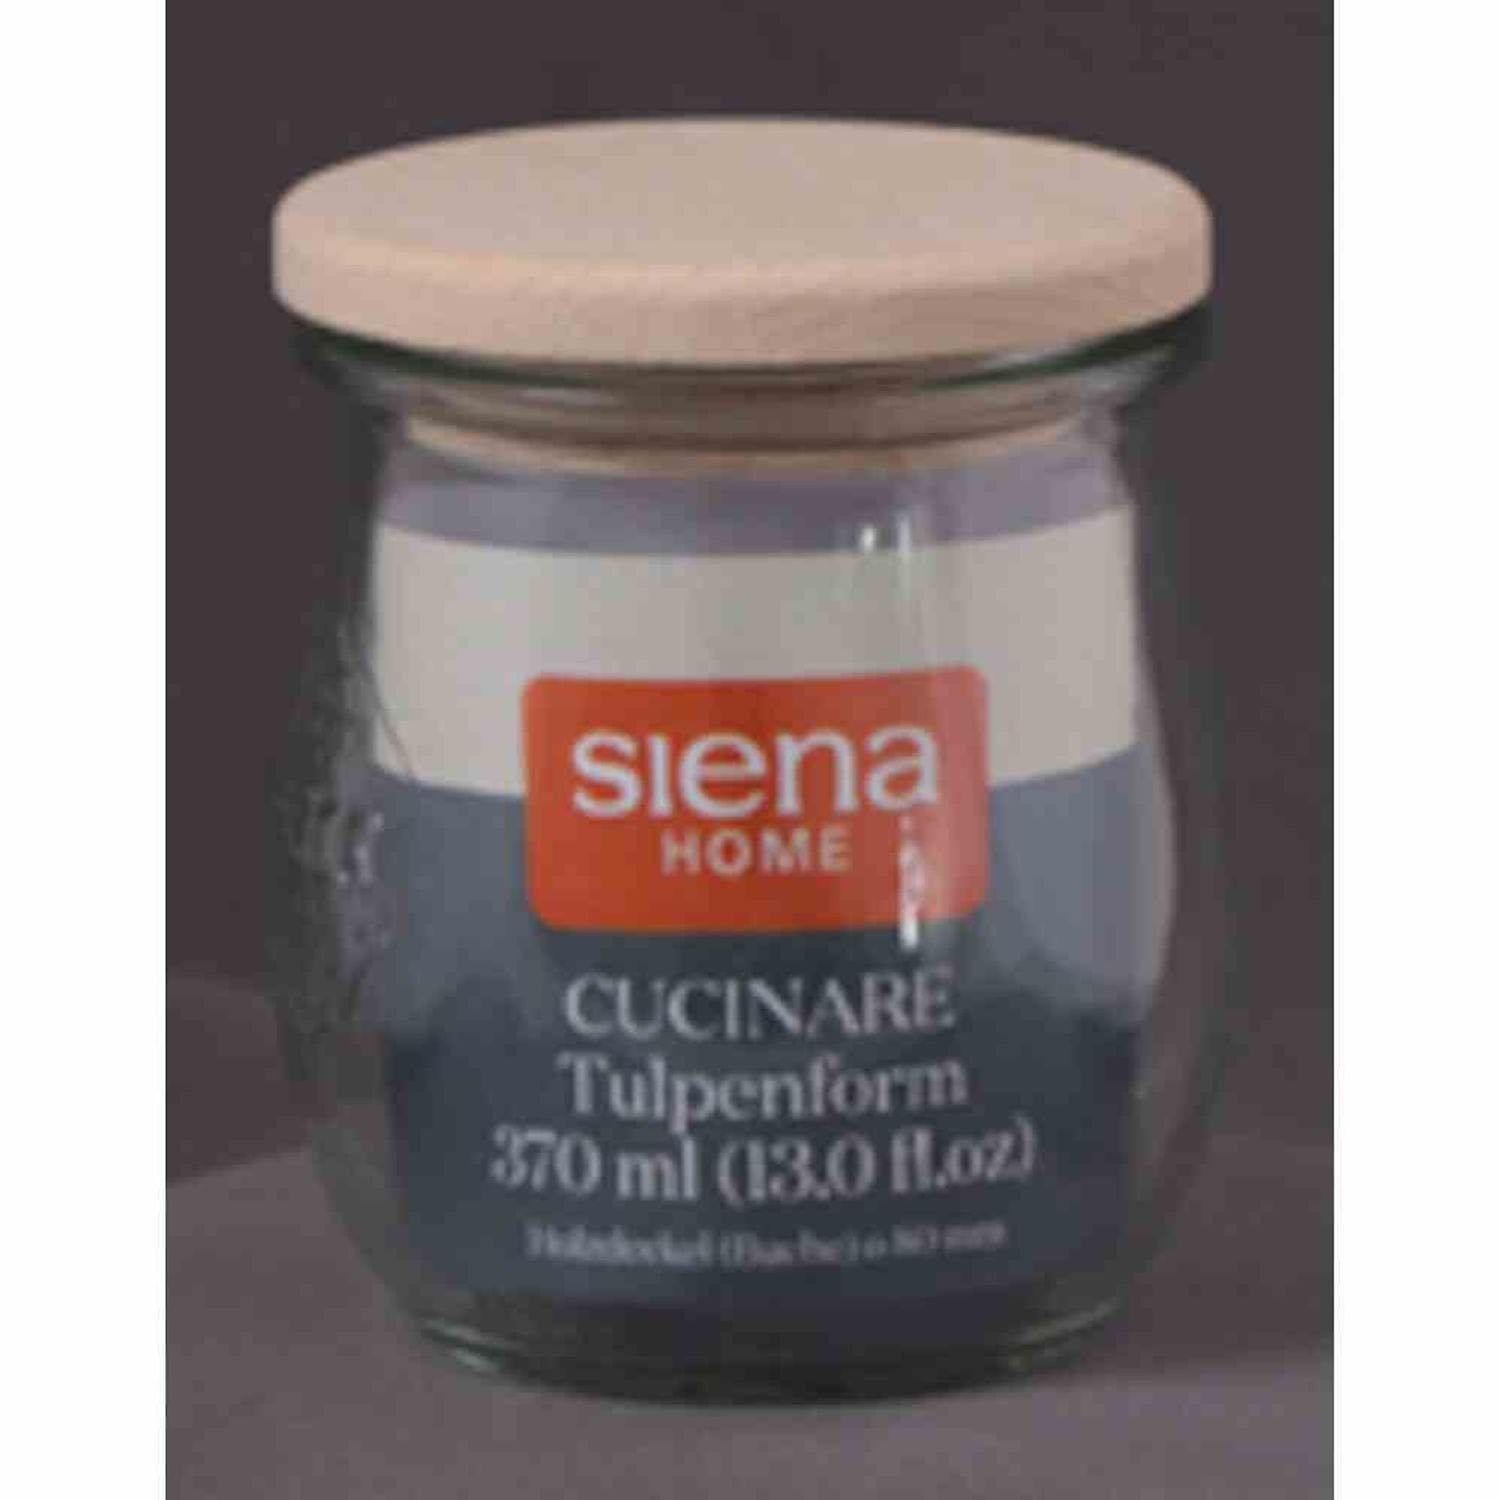 Siena Home Vorratsdose Sturz-Glas "Cucinare" RR370 Weck-Glas 370 ml, Buchenholz-Deckel, Glas